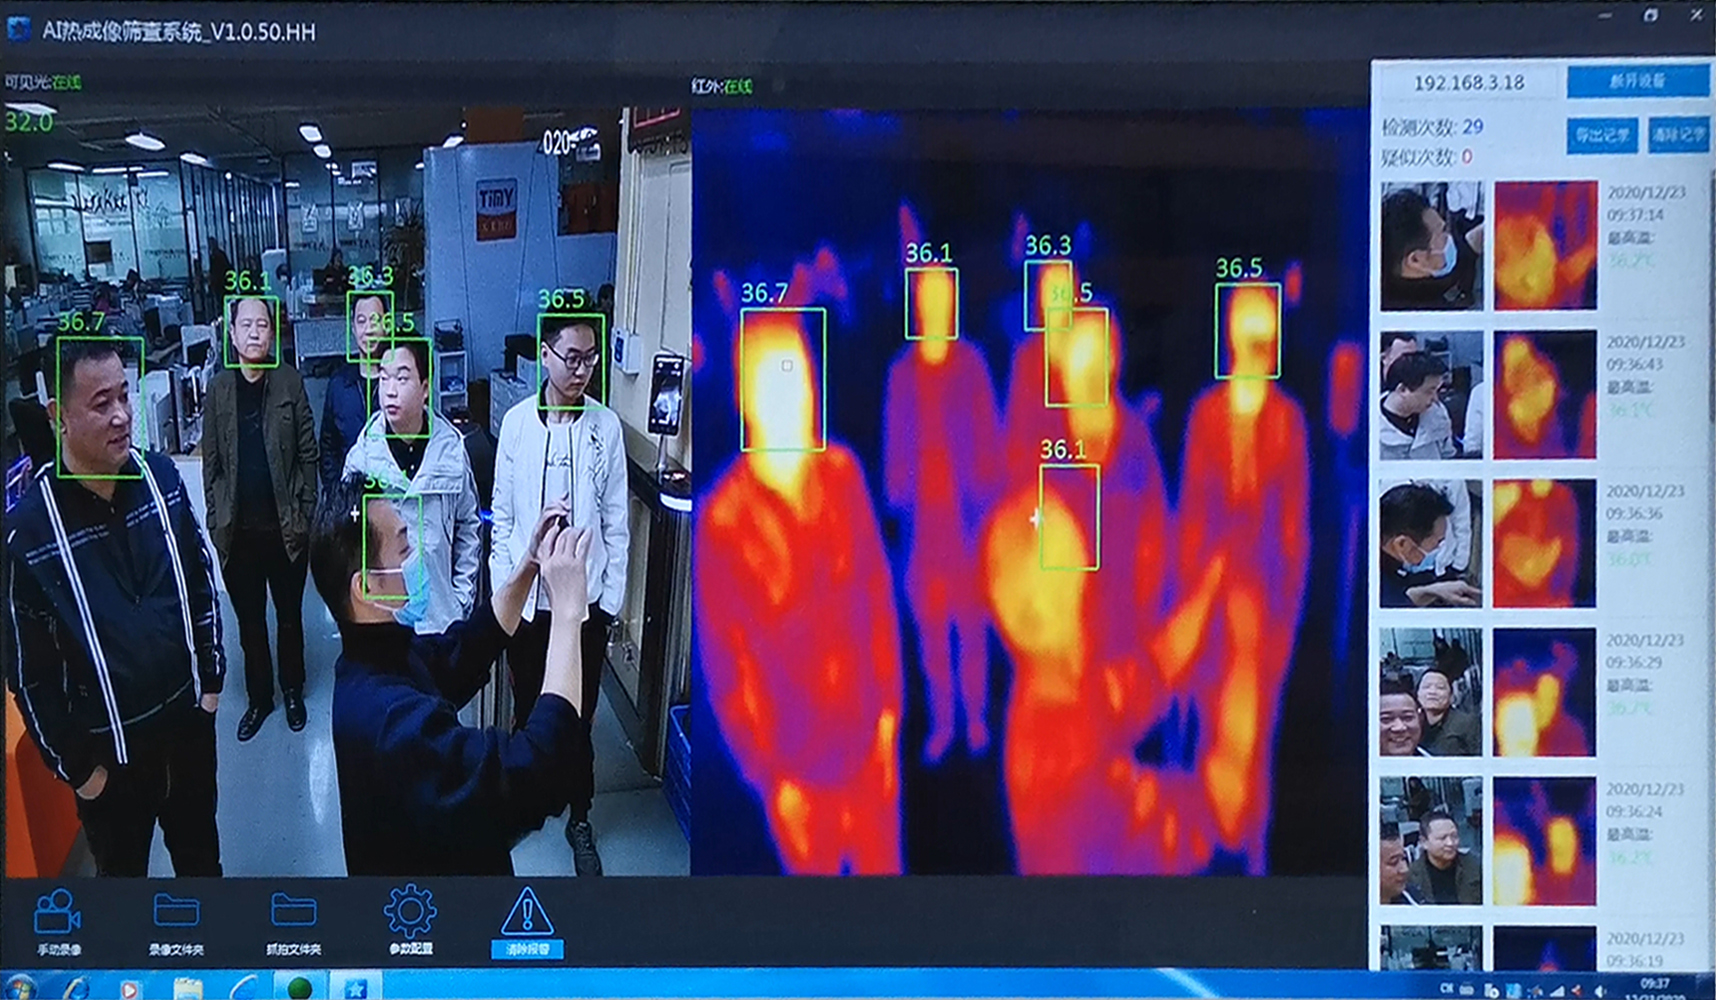 热成像摄像机 双目红外测温摄像头 人体红外测温仪 热成像测温设备